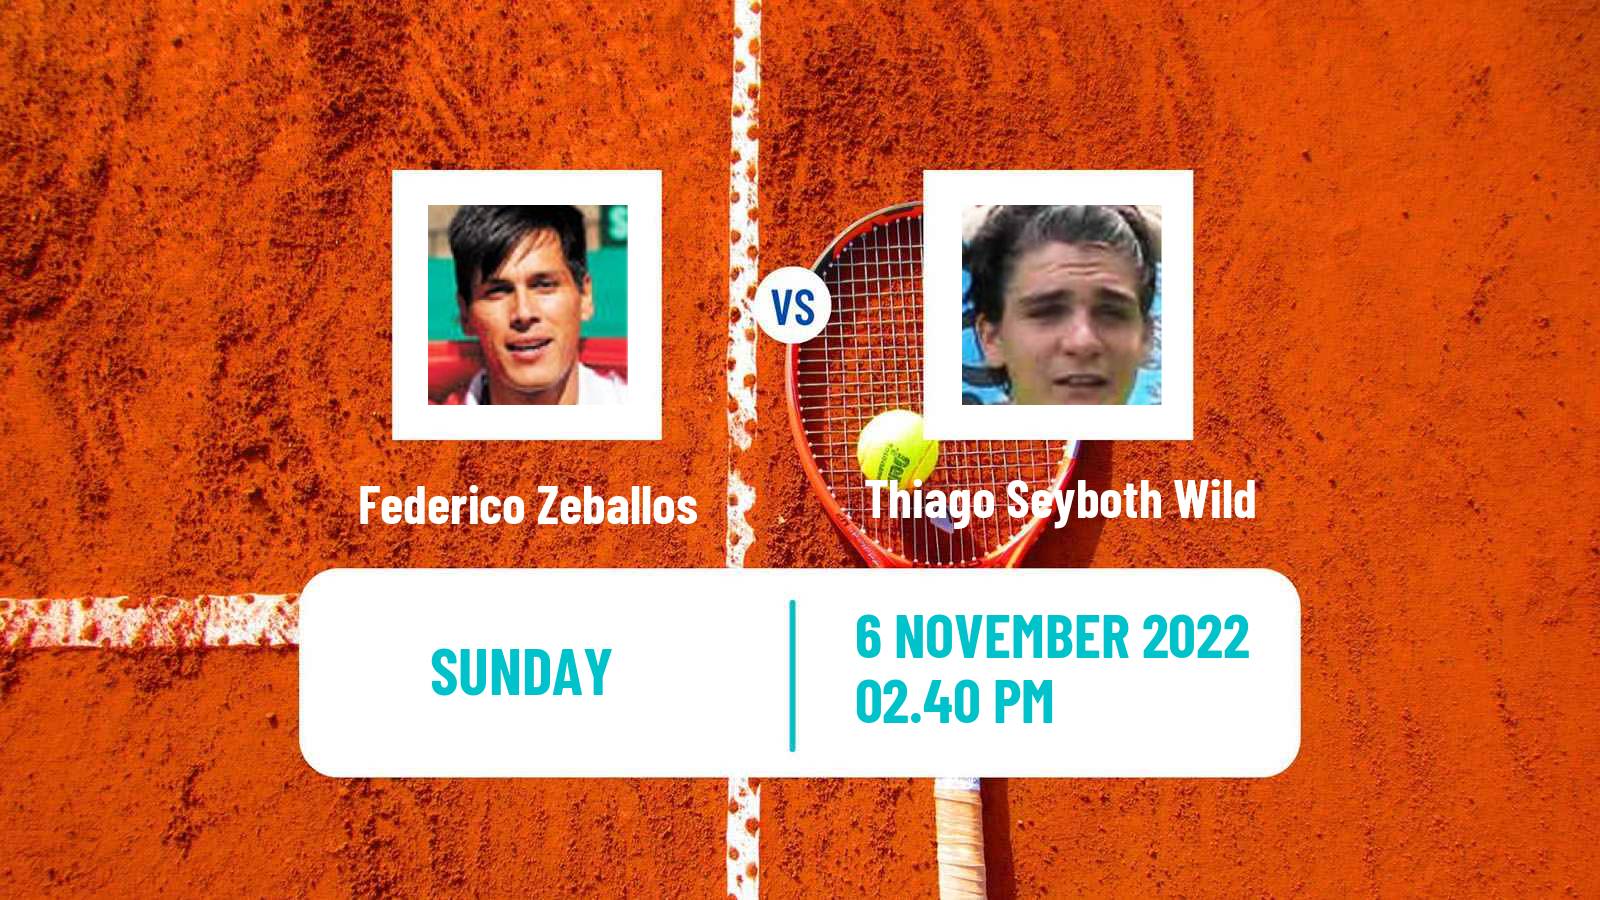 Tennis ATP Challenger Federico Zeballos - Thiago Seyboth Wild